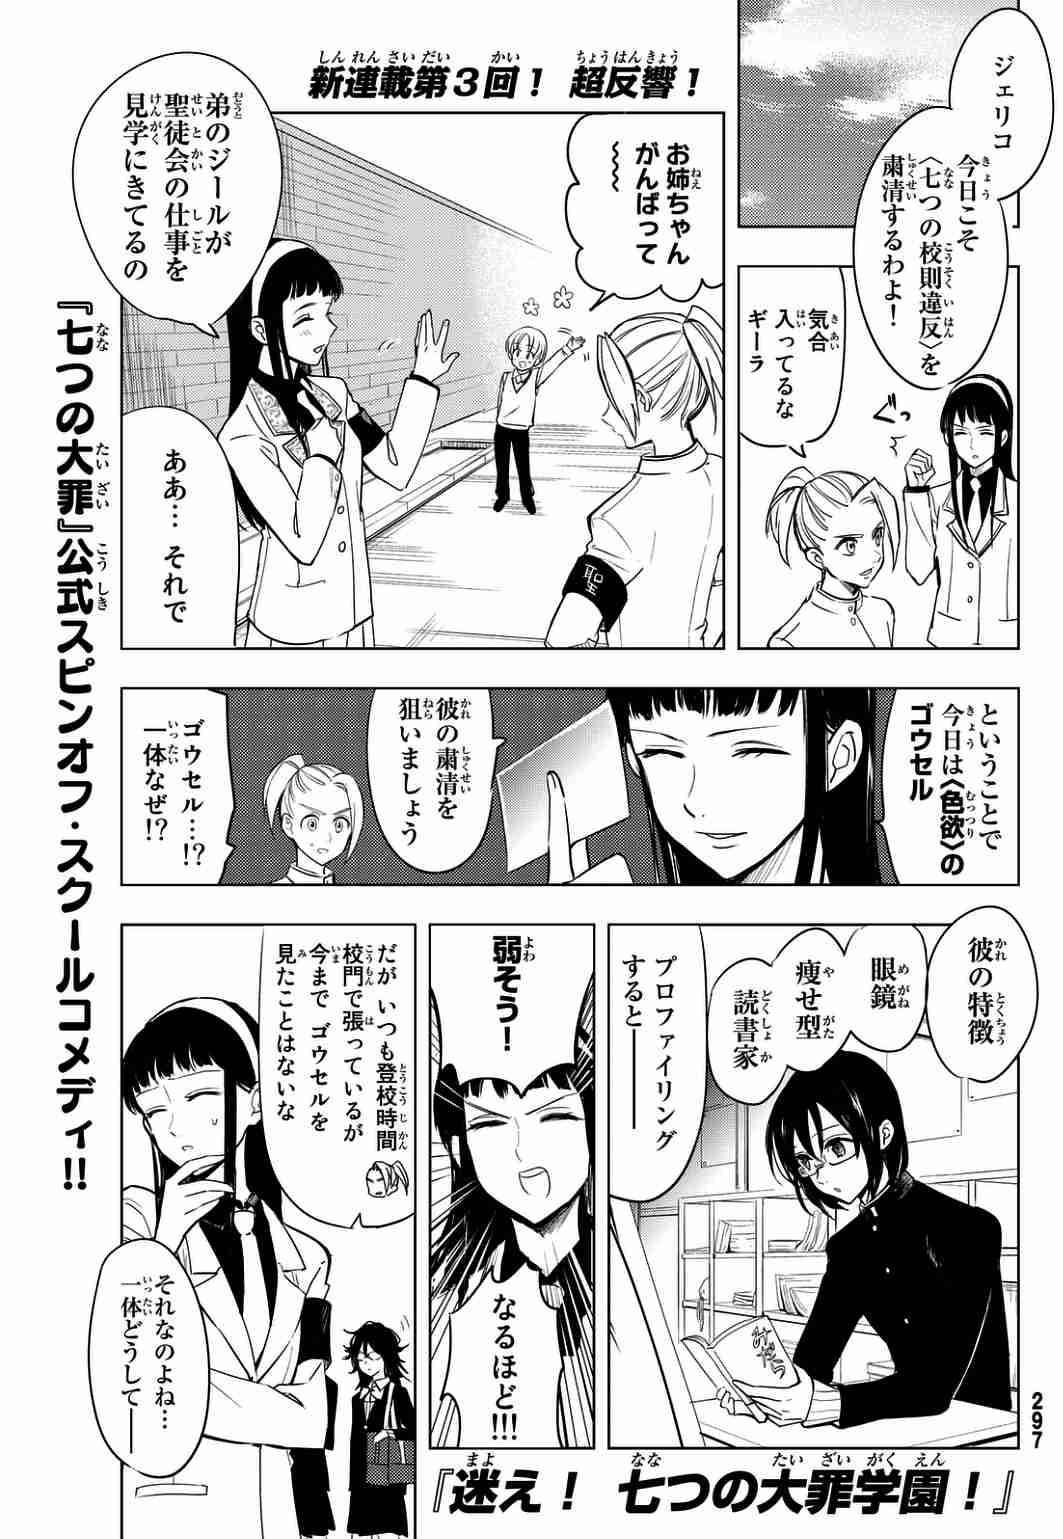 迷え 七つの大罪学園 7話 Manga Townまんがタウン まんがまとめ 無料コミック漫画 ネタバレ